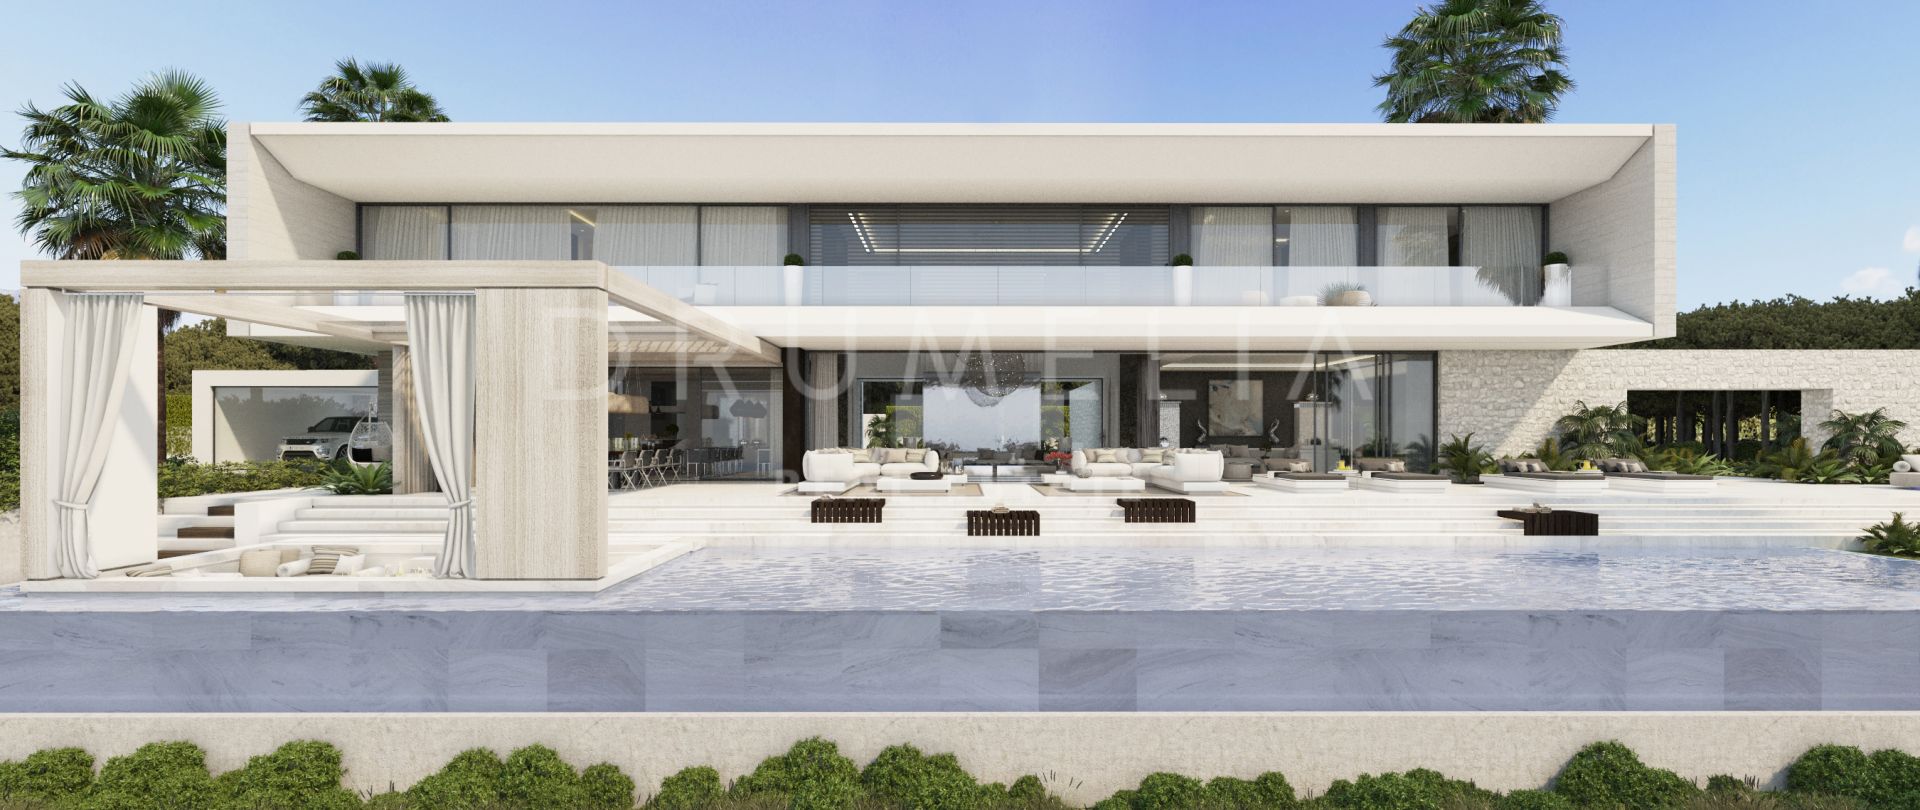 Maison de luxe contemporaine à la pointe de la technologie, El Madroñal, Benahavis